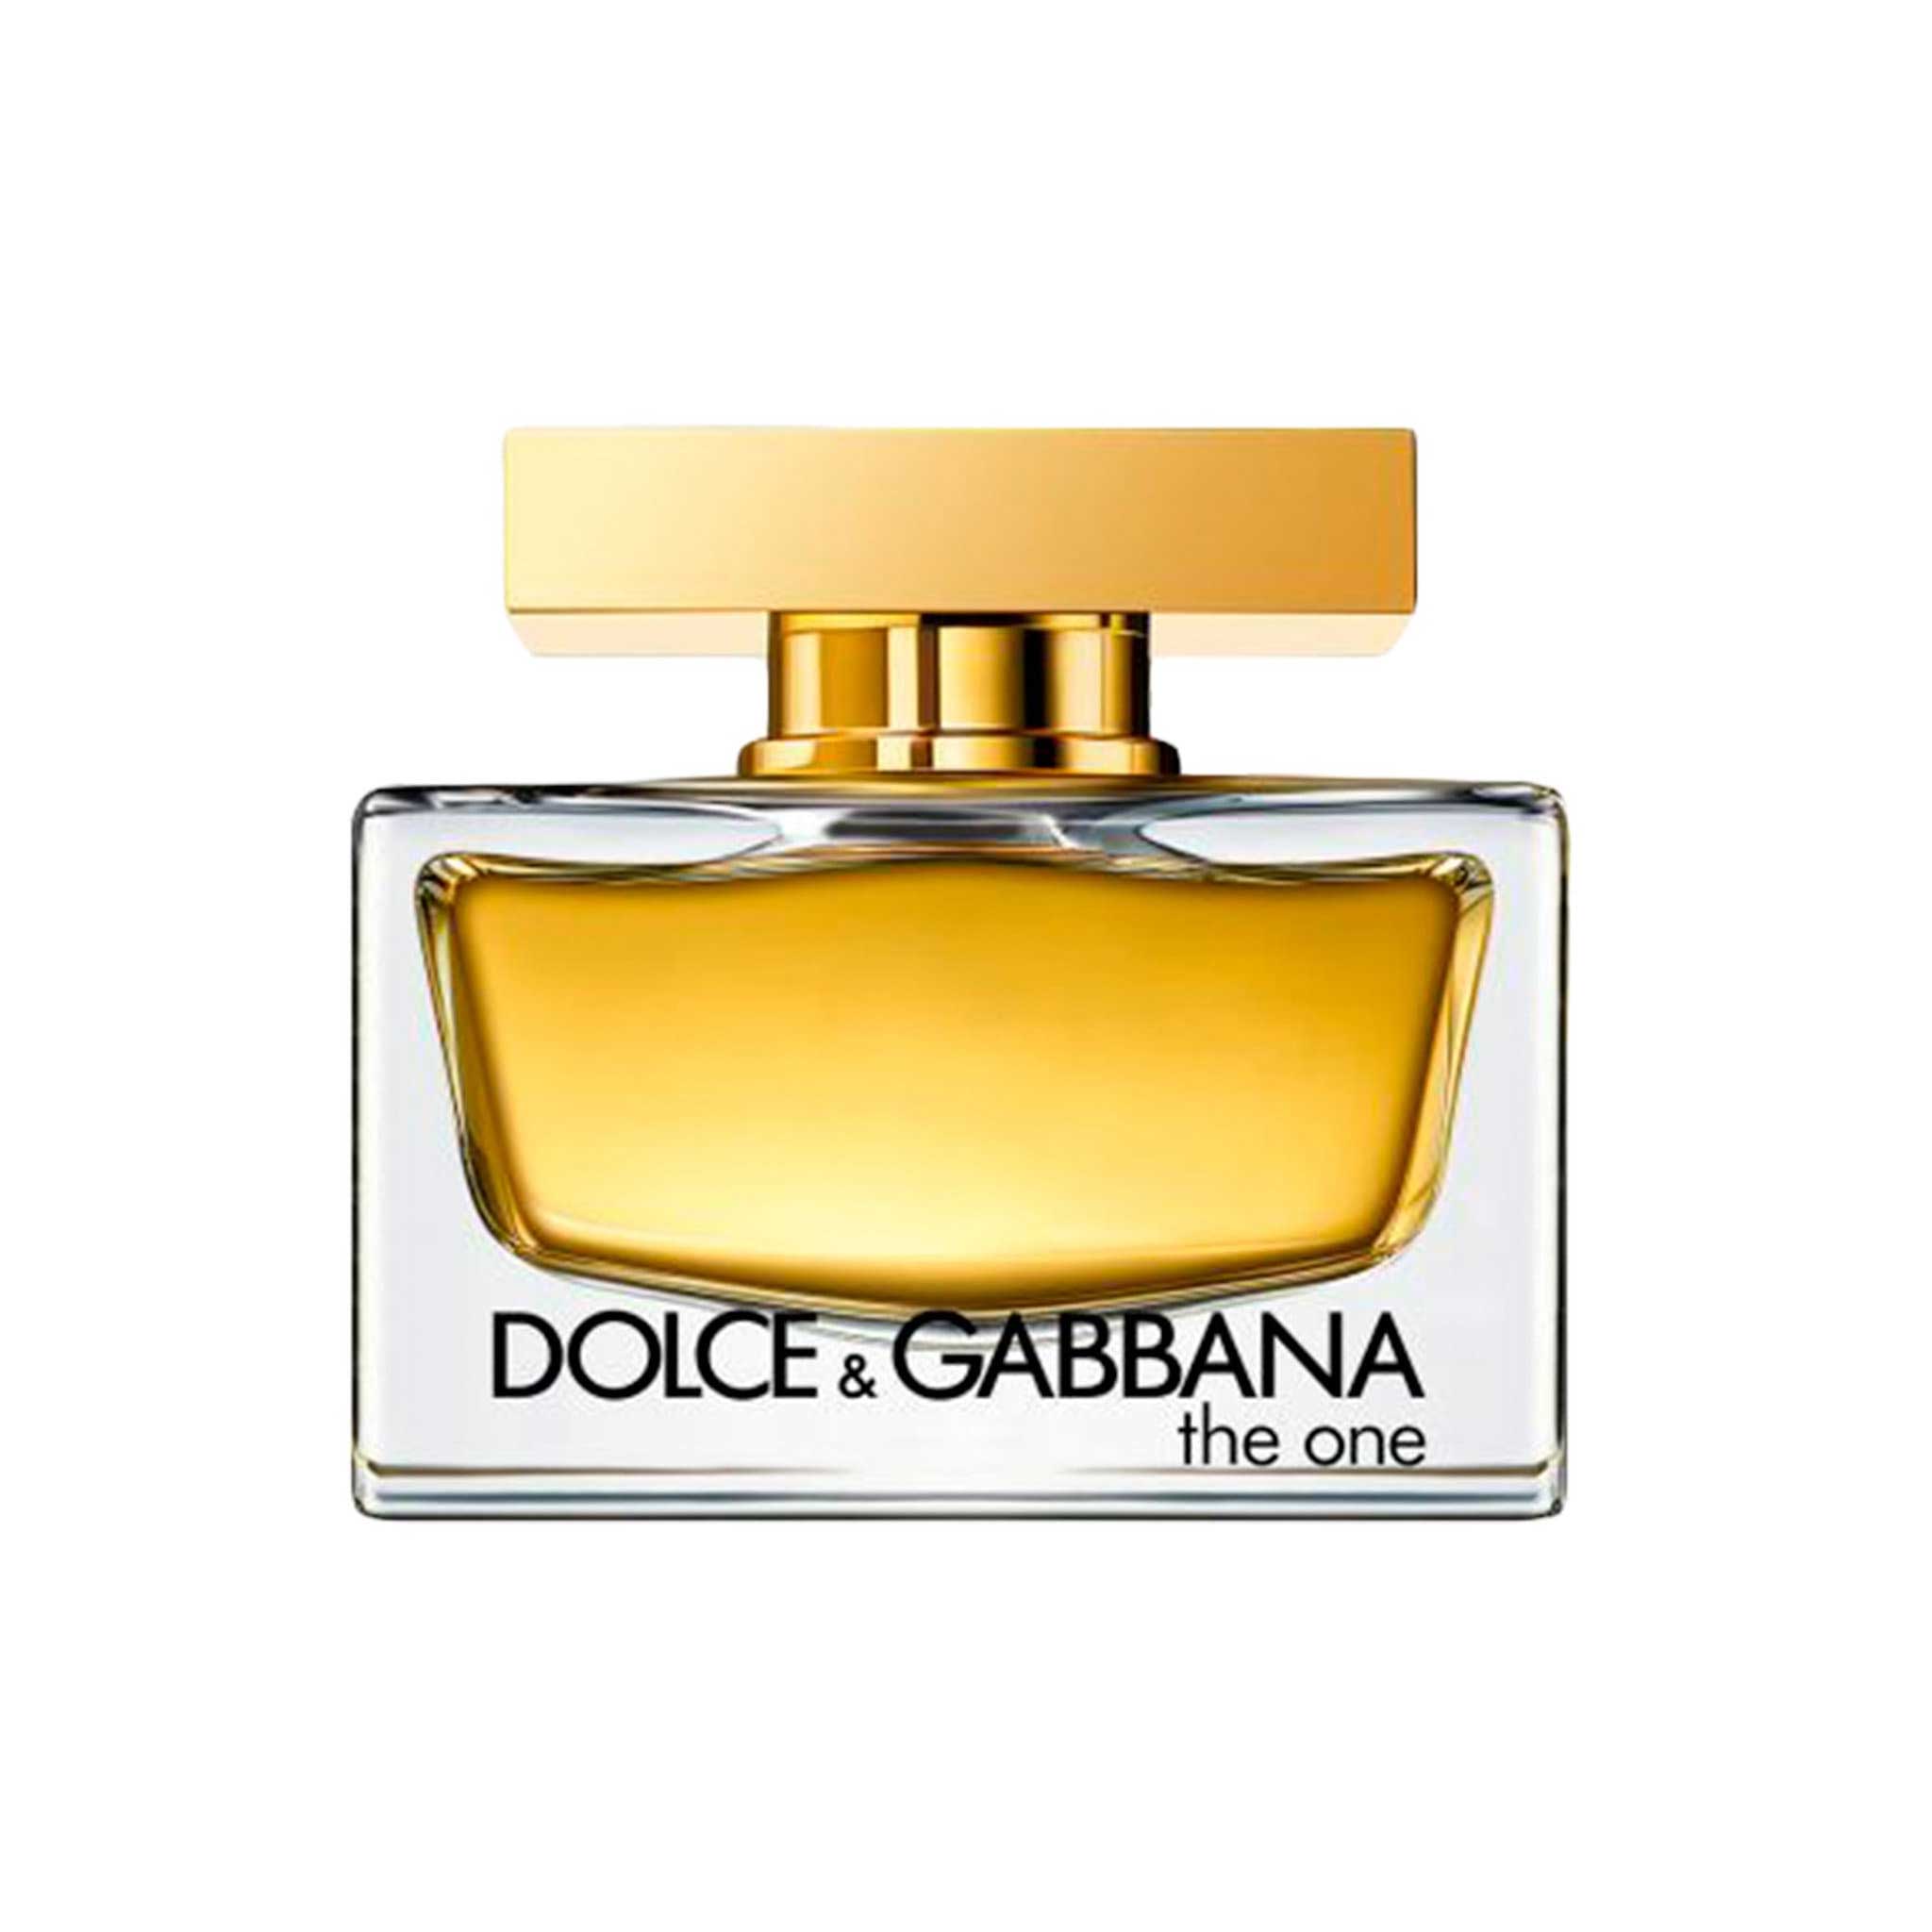 Dolce & Gabbana Pour The One for Women Eau de parfum 75ml